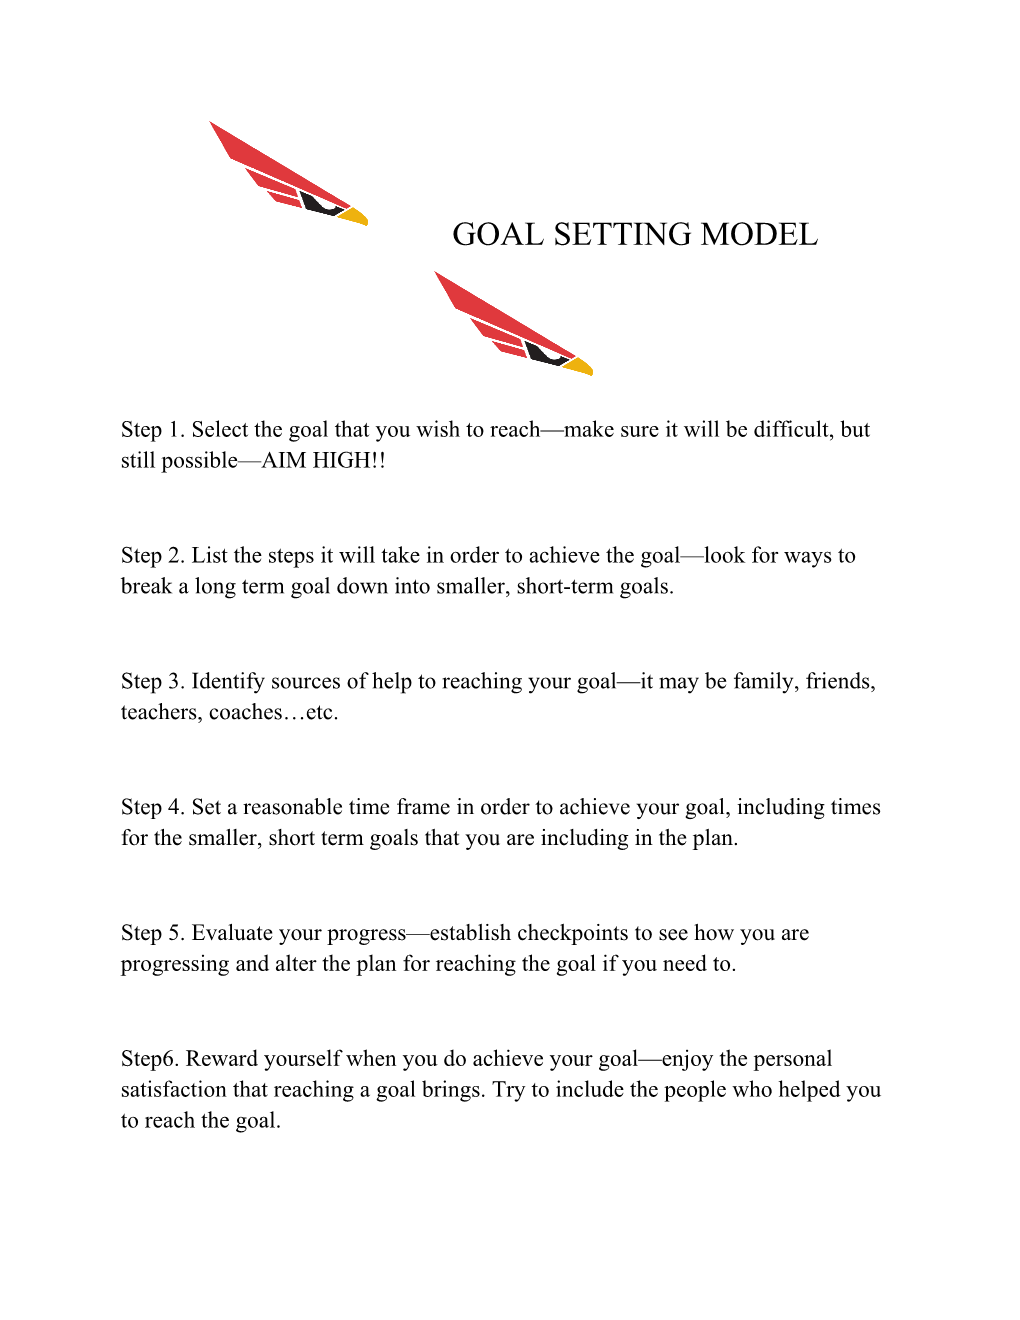 Goal Setting Model